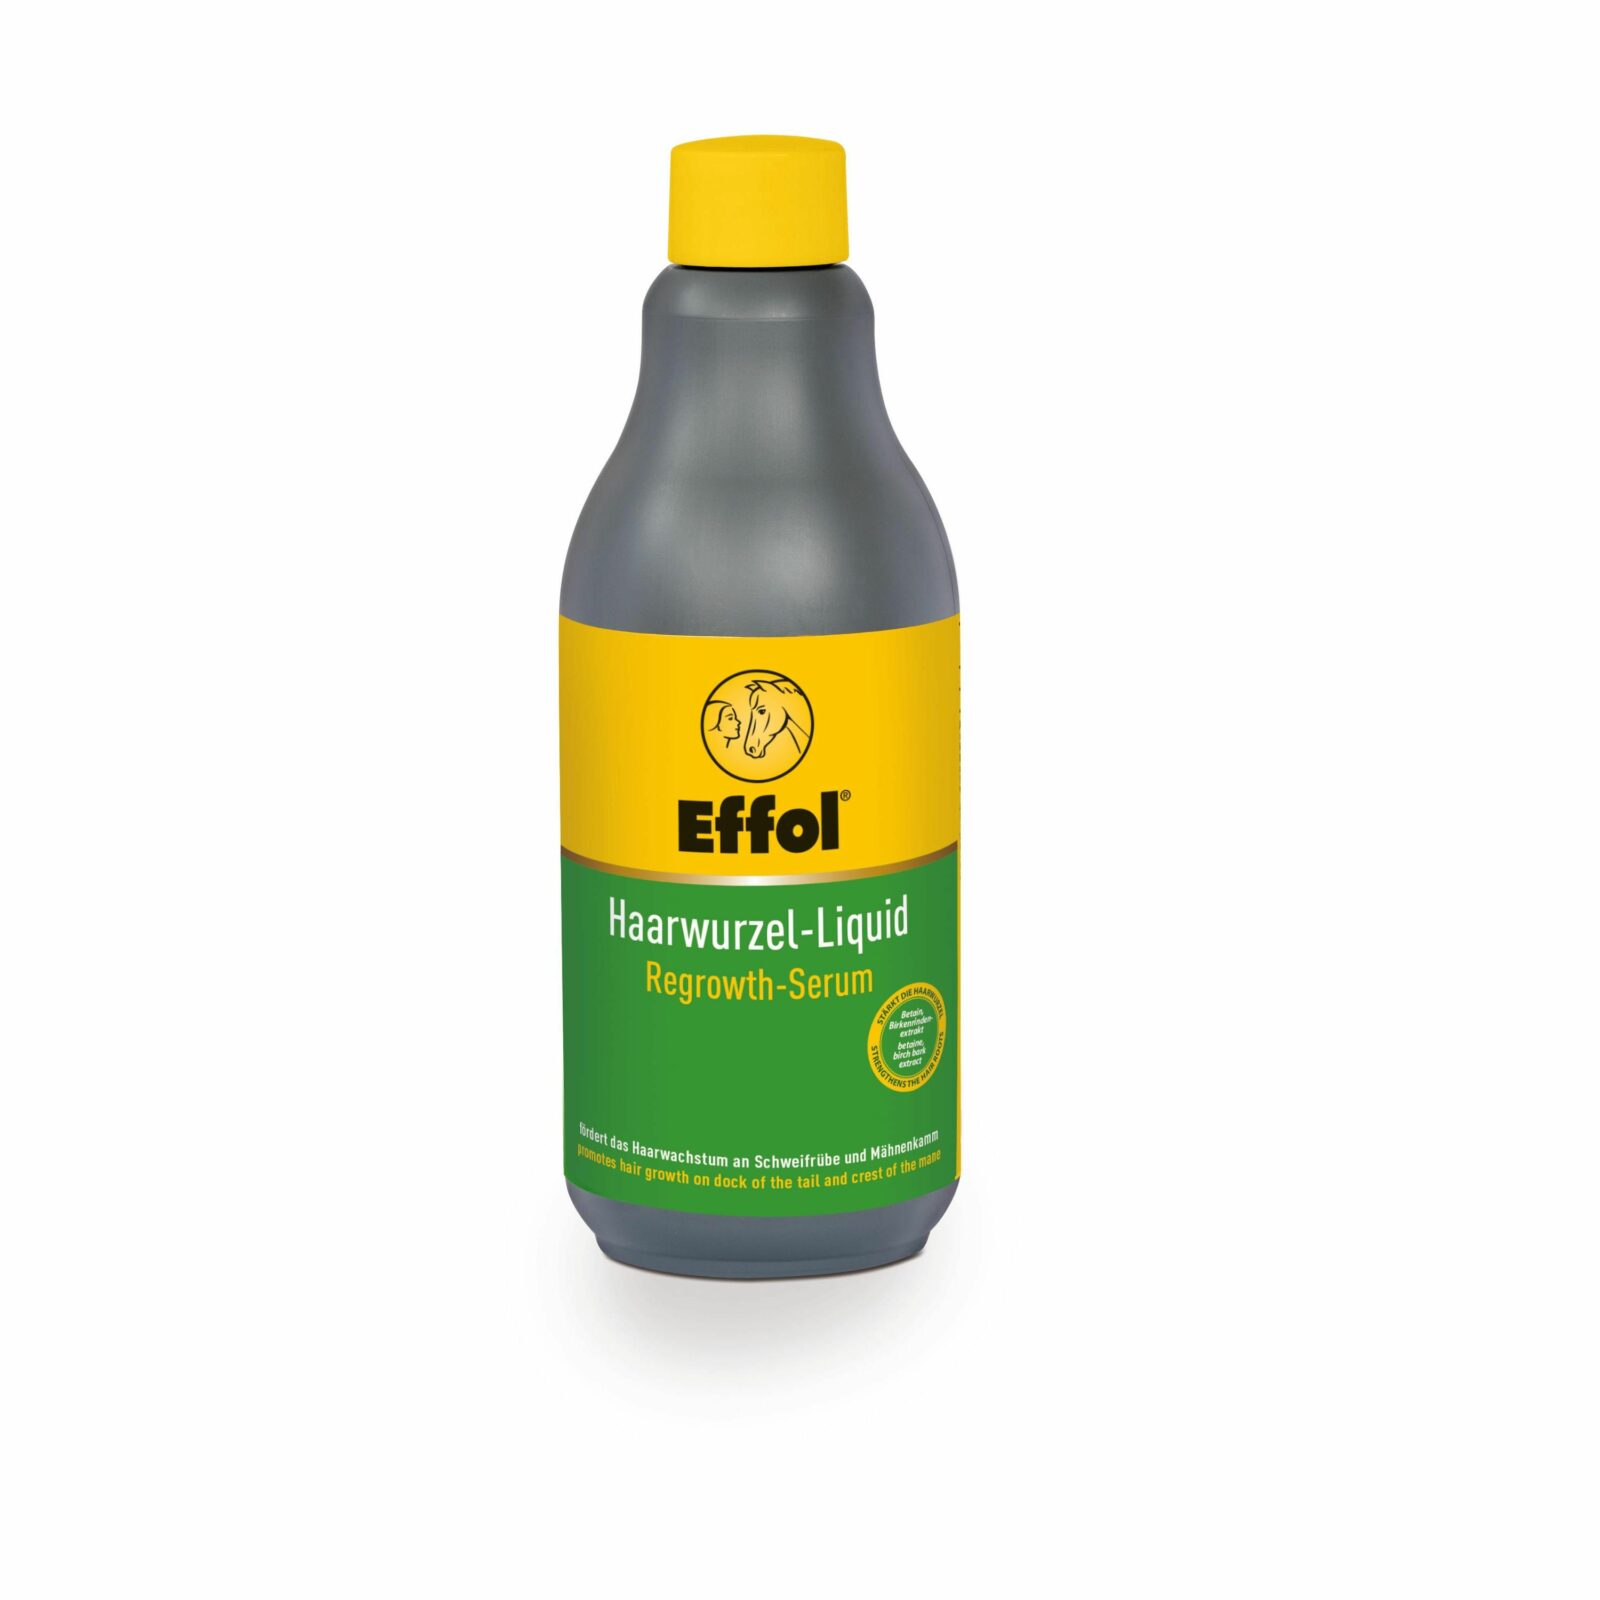 Effol-HaarwurzelLiquid500ml-1